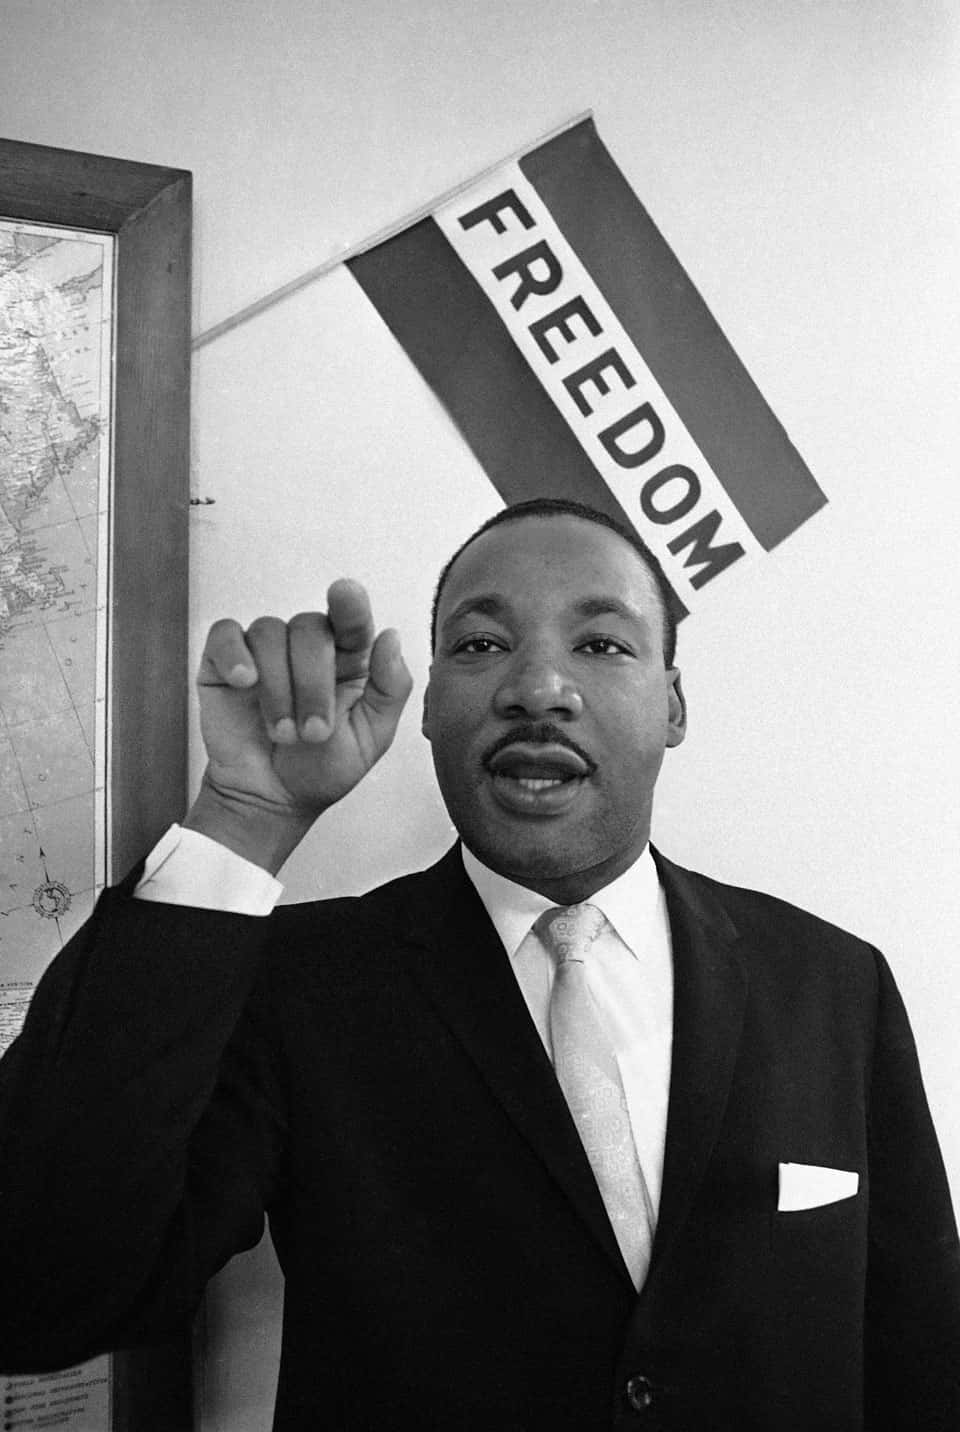 Ildefunto Attivista Dei Diritti Civili Martin Luther King Jr. Lottando Per L'uguaglianza E La Giustizia In America.